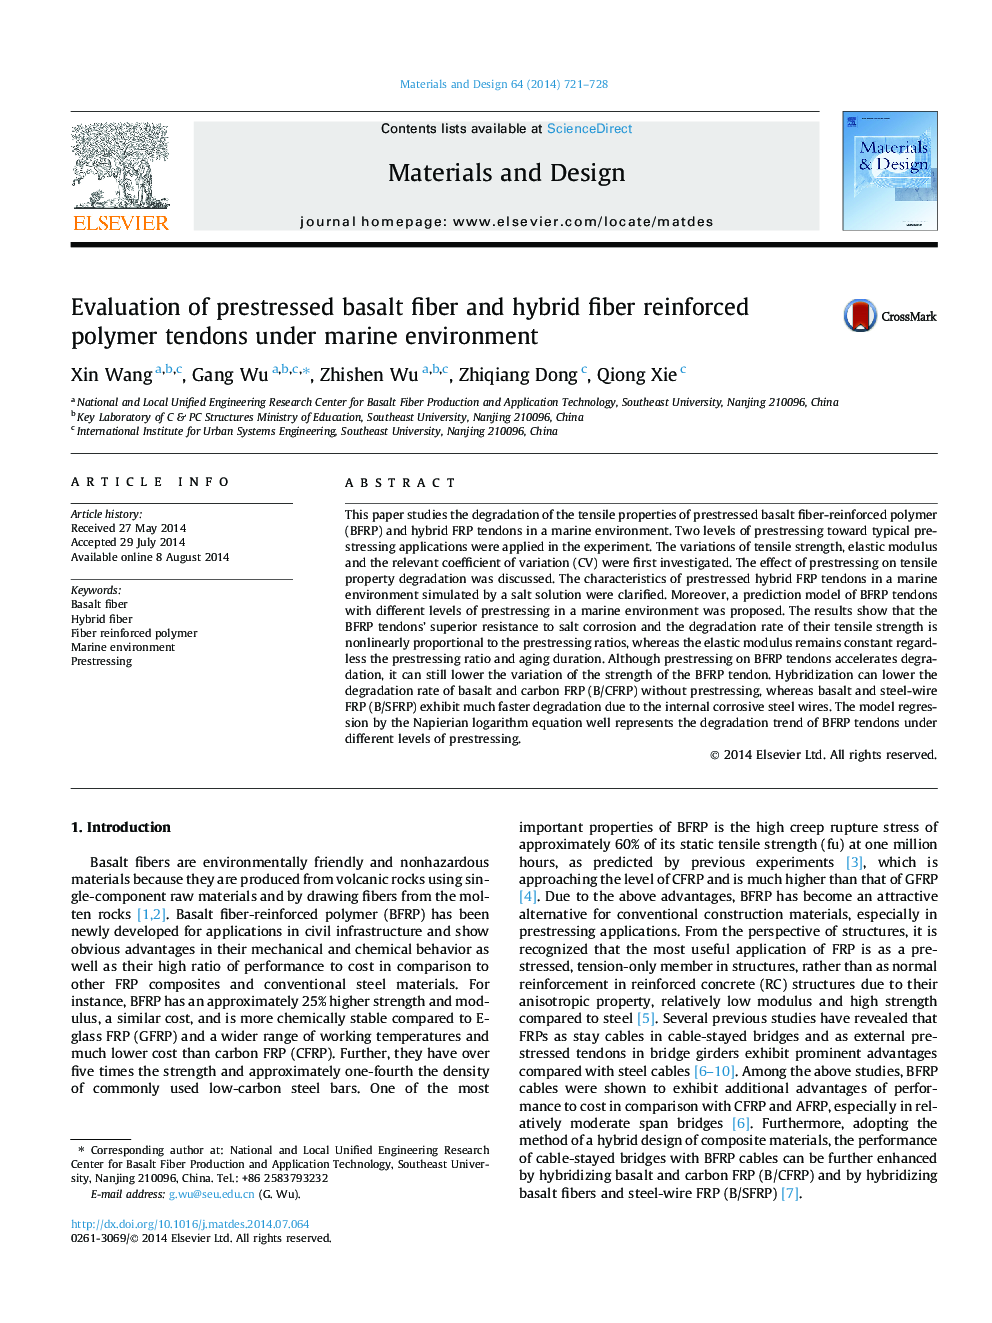 ارزیابی تاندونهای پلیمری تقویت شده فیبر بر پایه فیبرهای بازالت و هیبرید در محیط دریایی 